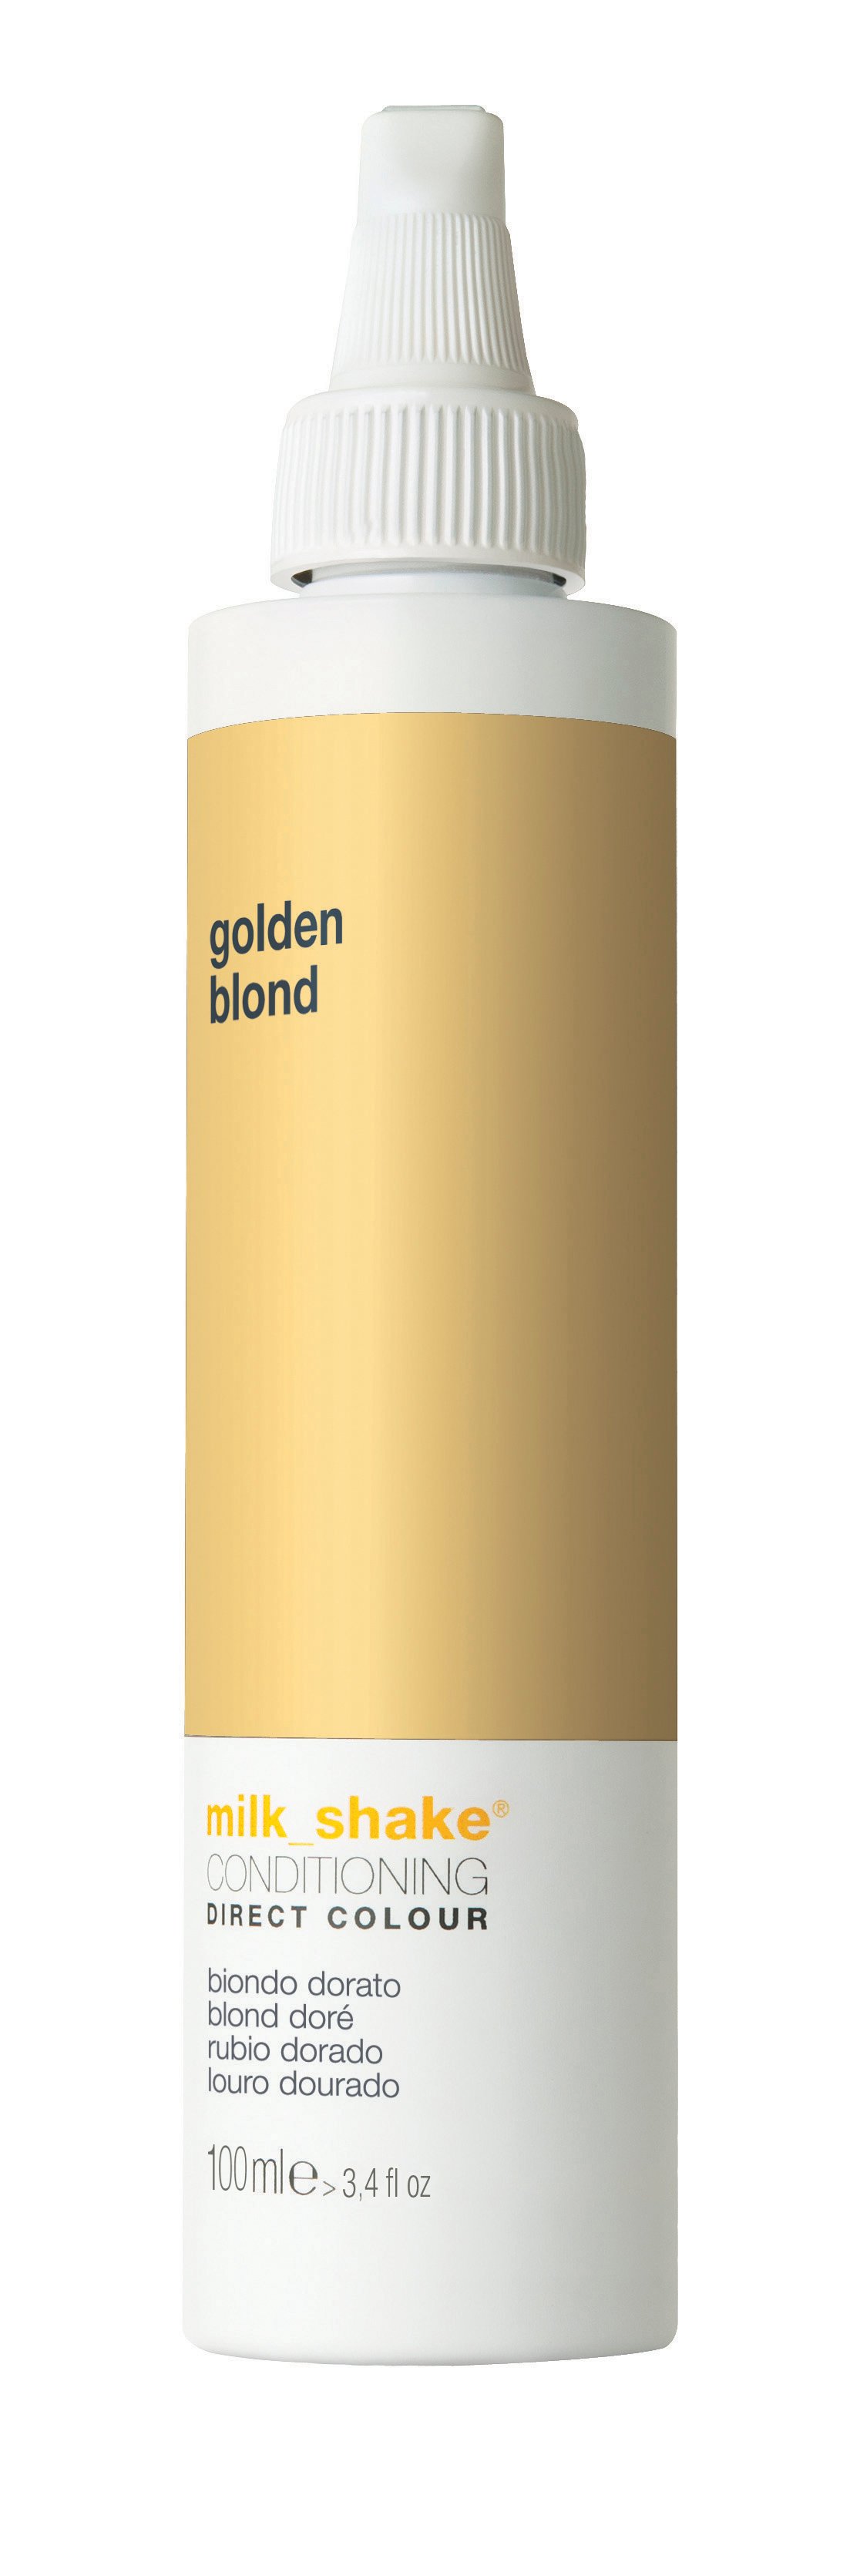 milk_shake - Direct Color 100 ml - Golden Blond - Skjønnhet